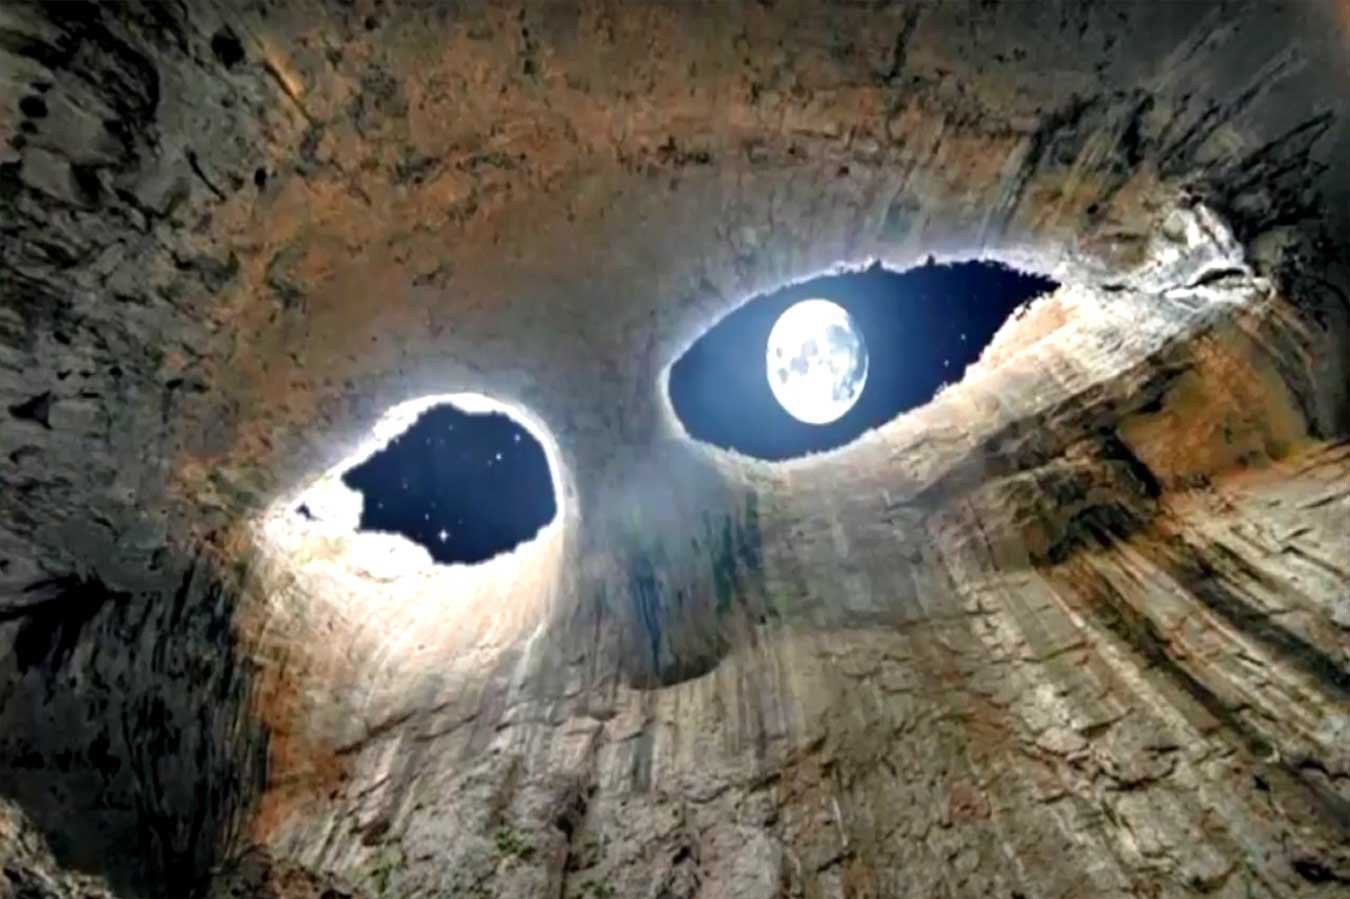 Cueva "Los ojos de dios"